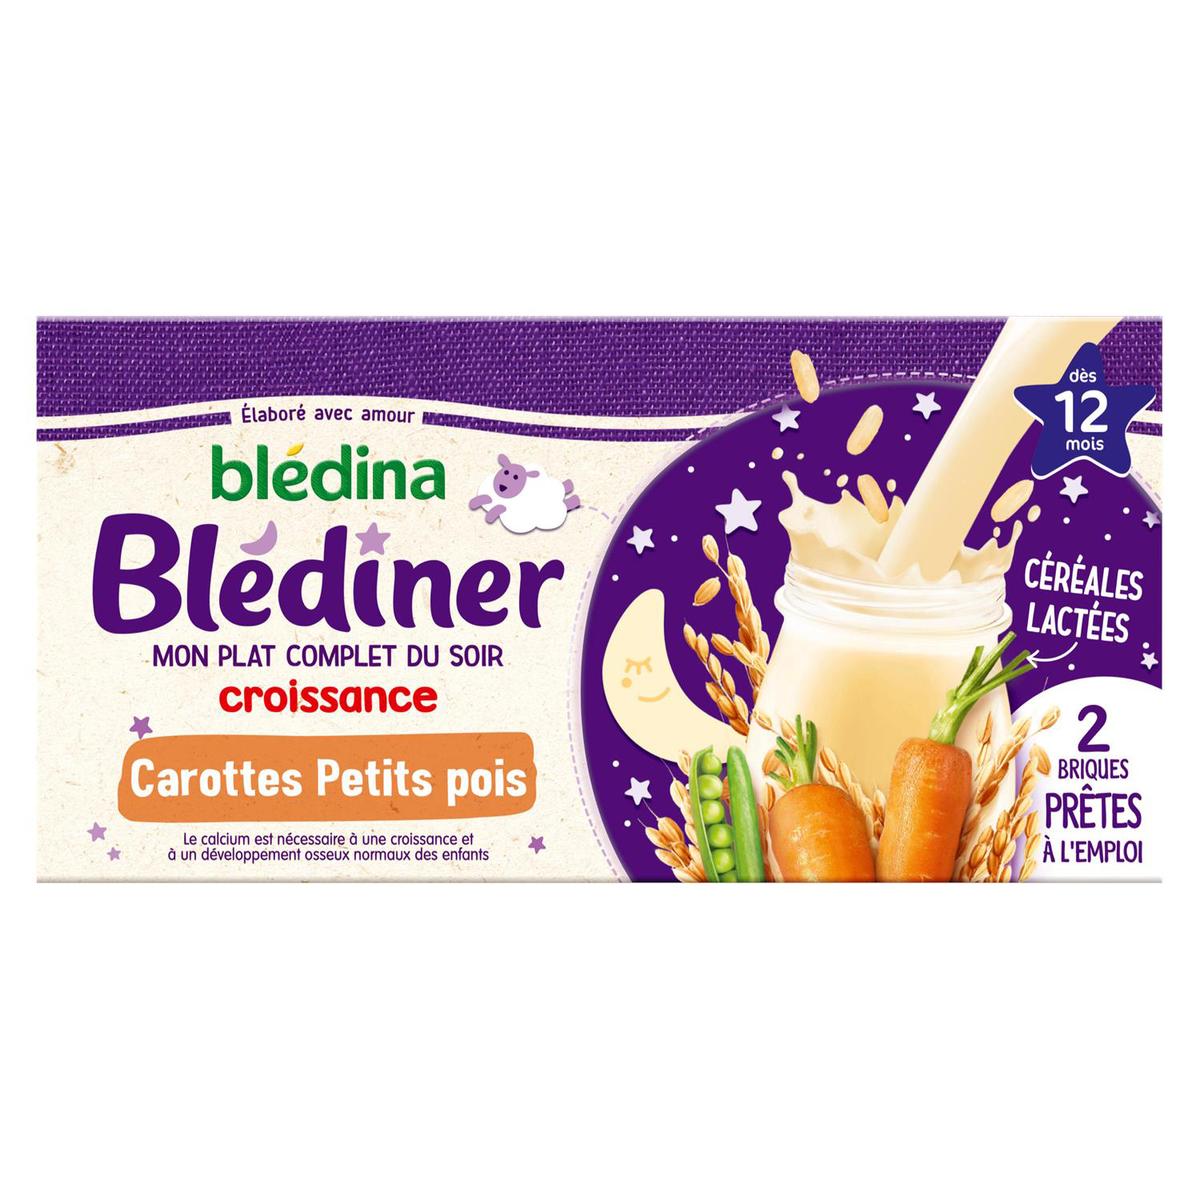 Blédina: Actualité de la marque Blédina - Marques Agroalimentaire